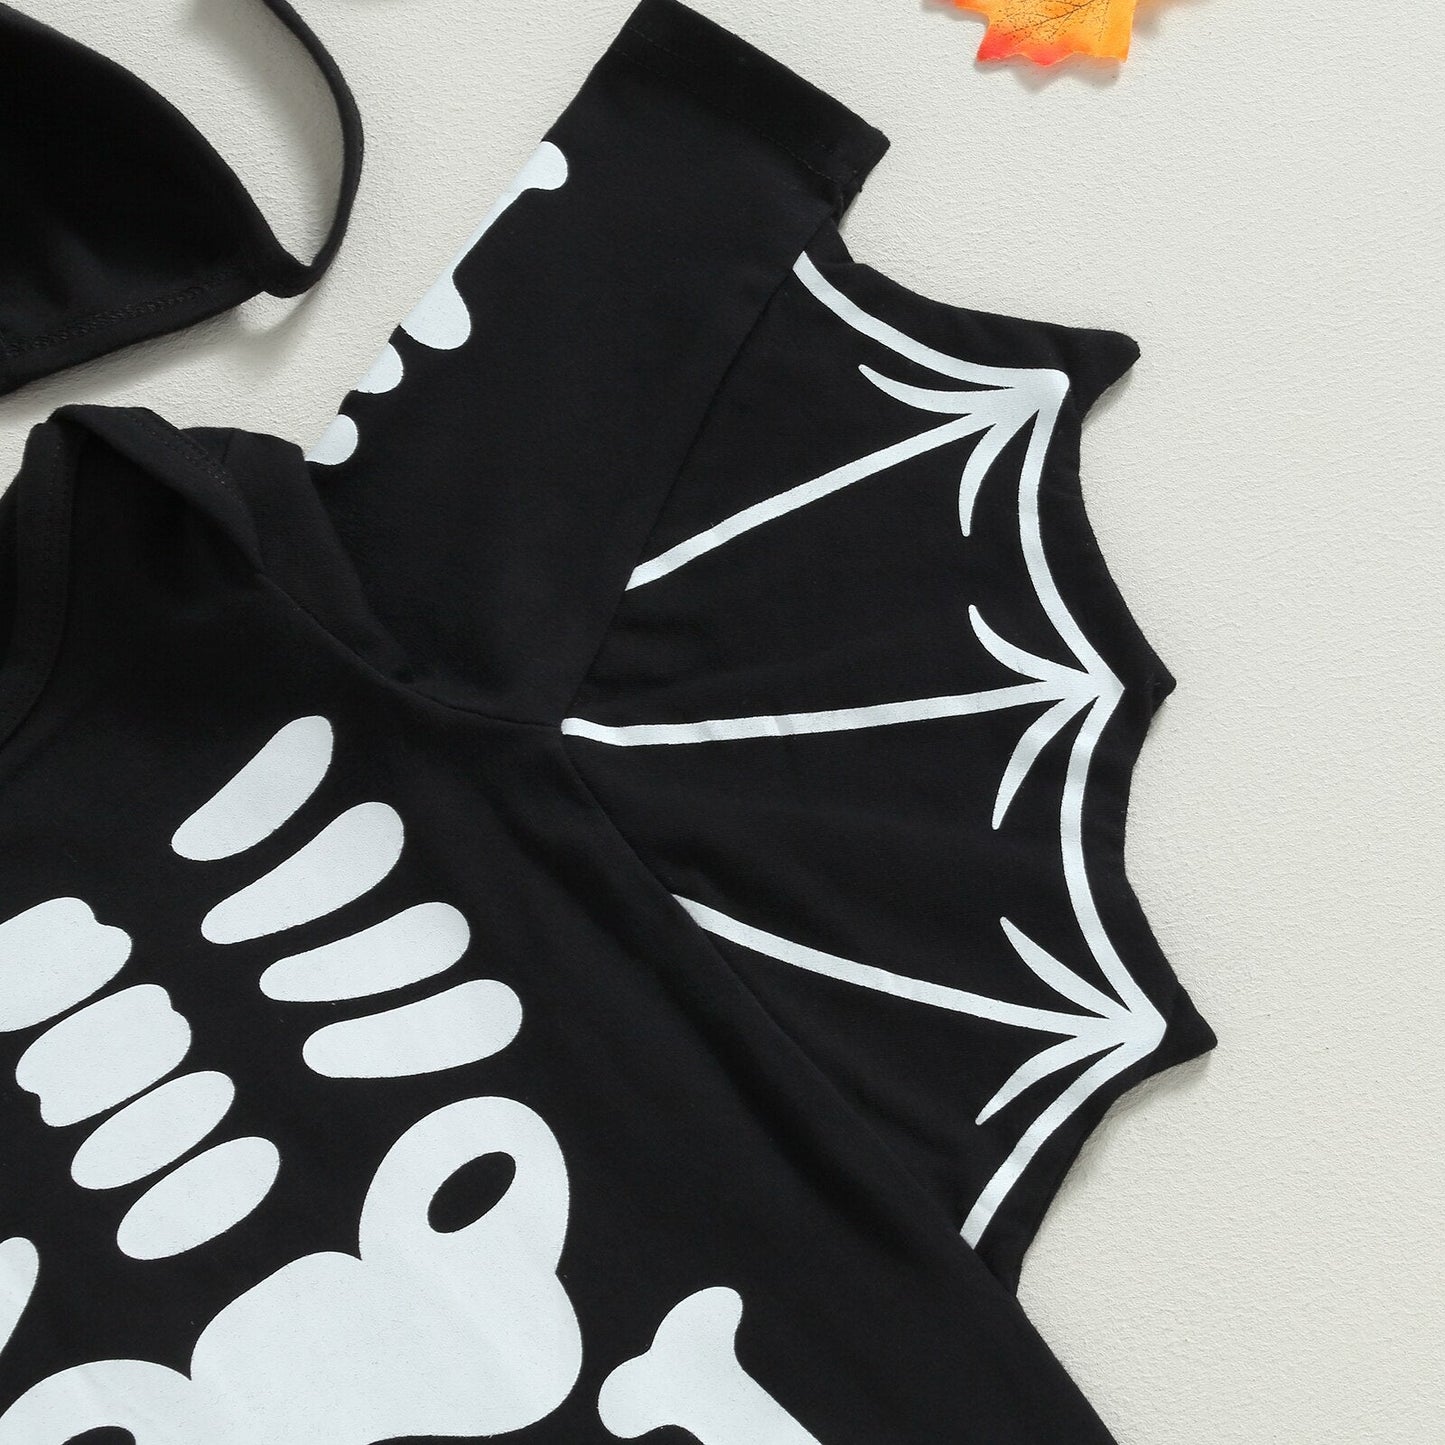 Halloween Baby Bat Jumpsuit - Koko Mee